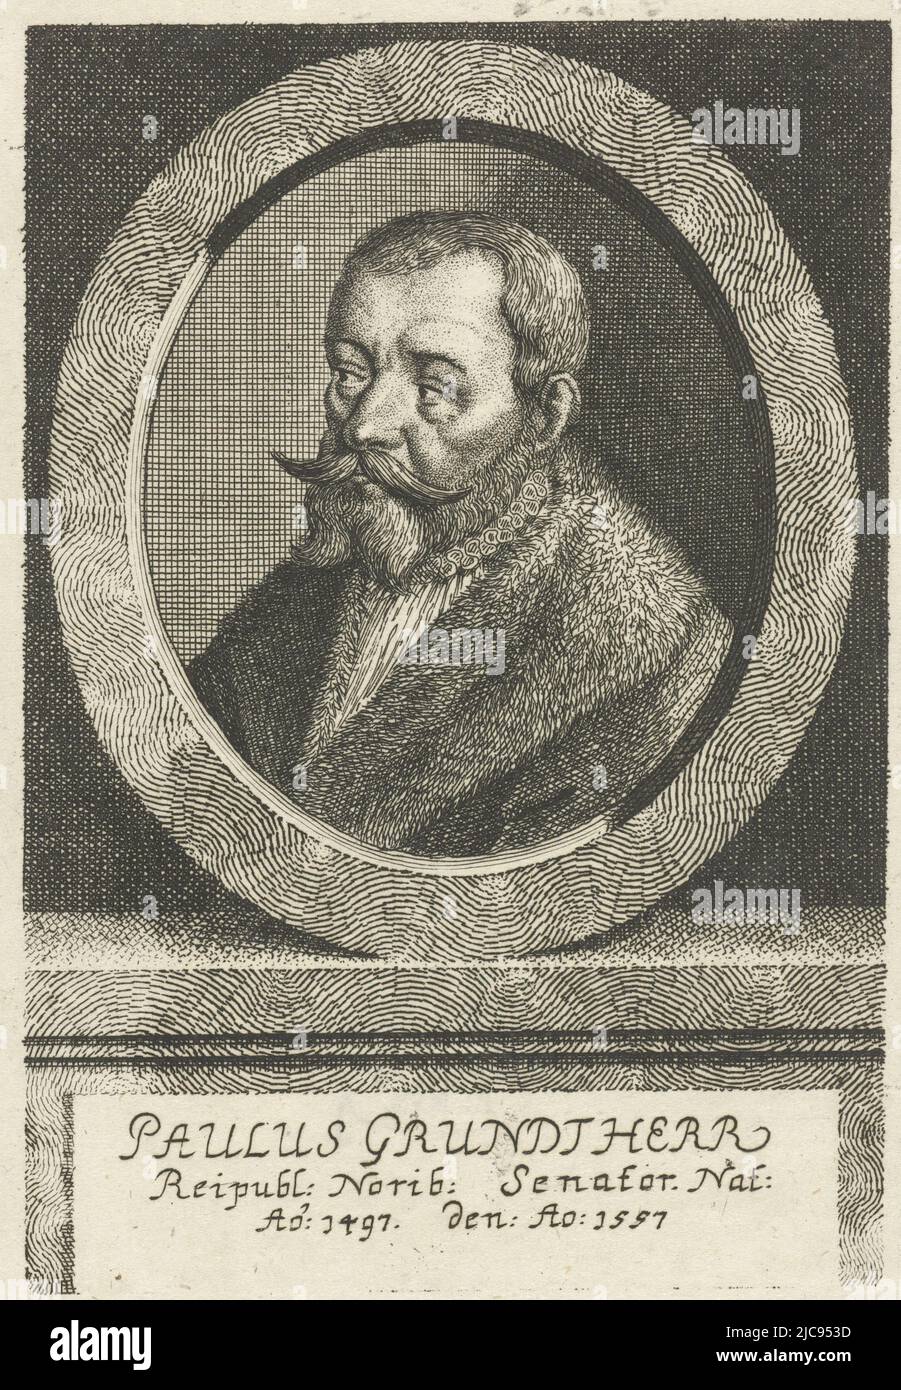 Ritratto di Paulus Grundherr, senatore a Norimberga, Ritratto di Paulus Grundherr, tipografo: Johann Friedrich Leonard, 1643 - 1680, carta, incisione, h 146 mm x w 100 mm Foto Stock